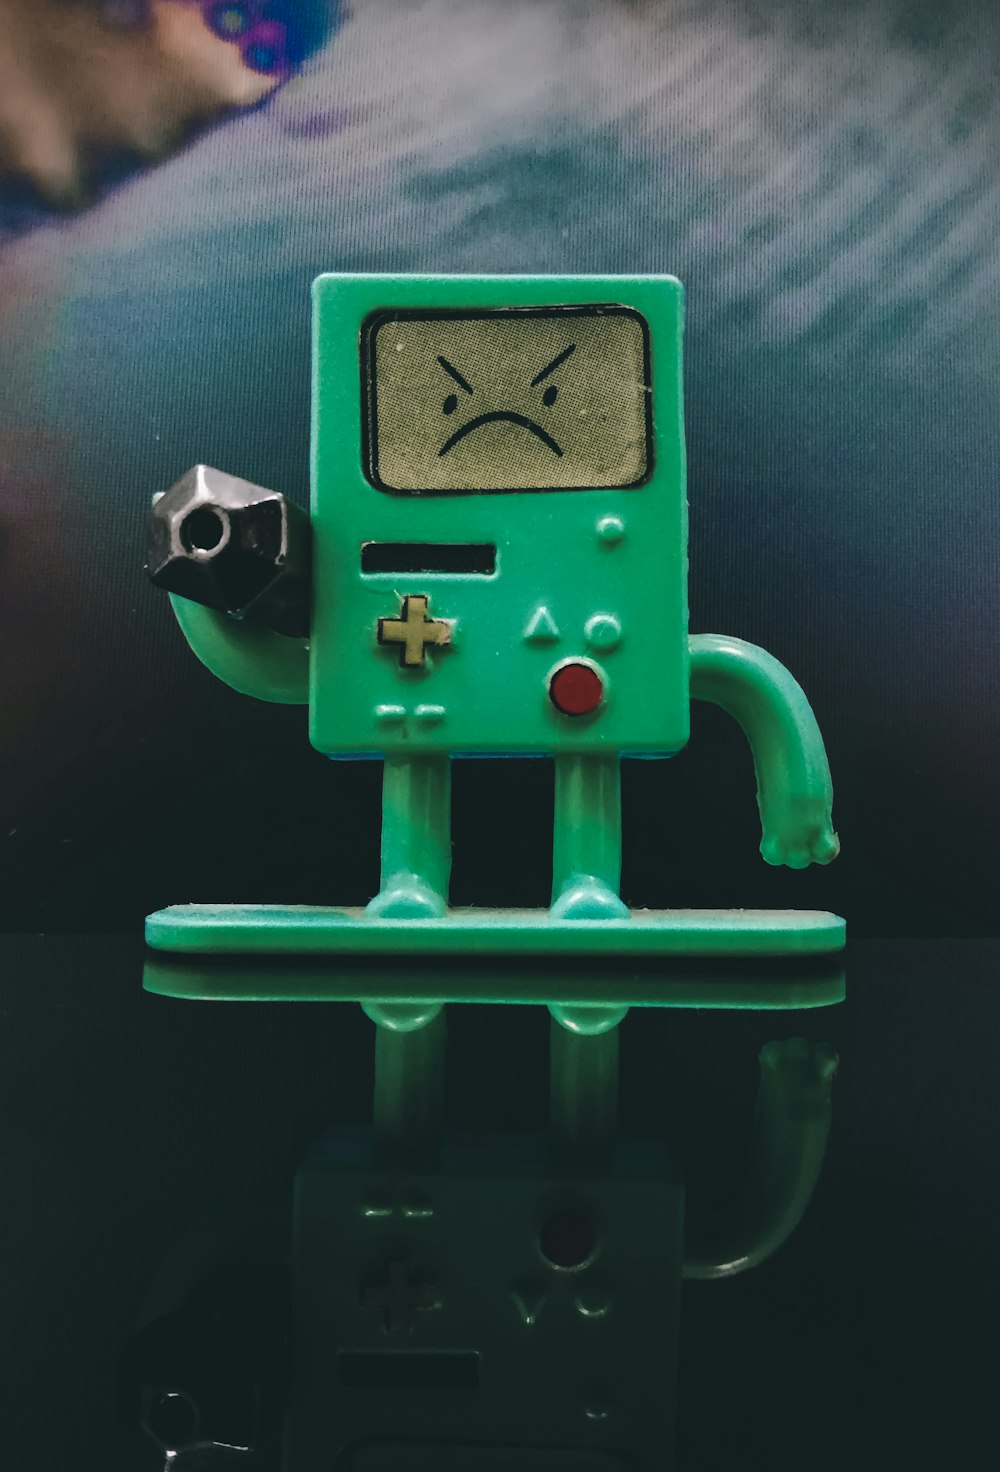 緑と黒のロボット玩具